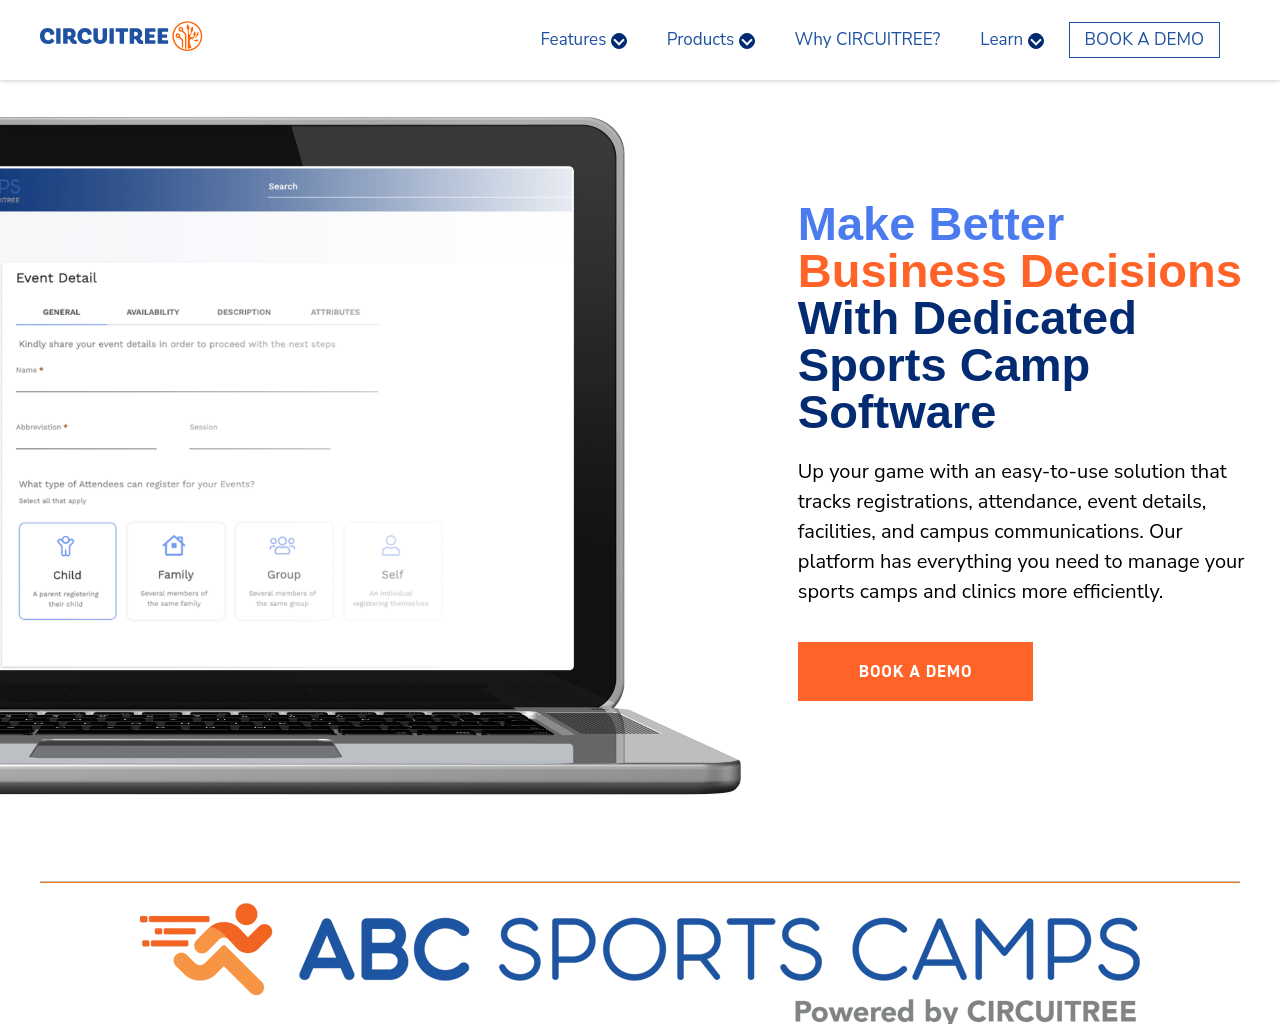 abcsportscamps.com